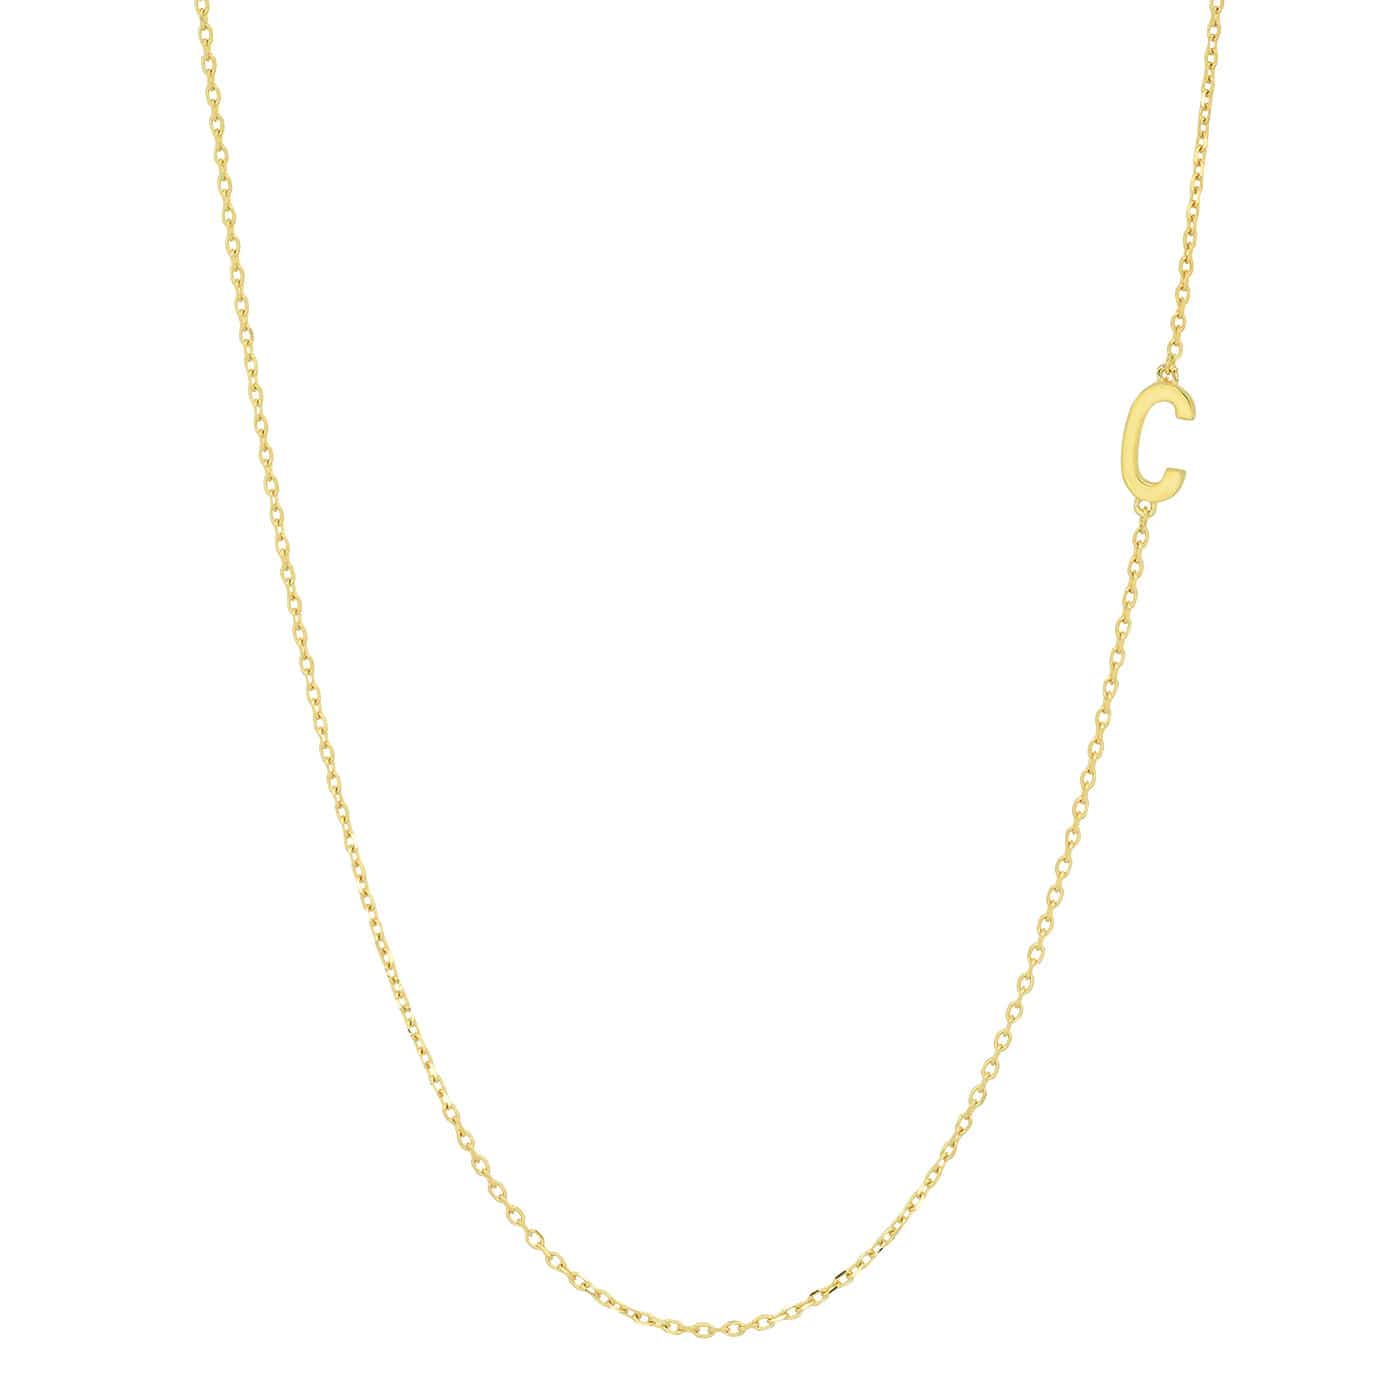 TAI JEWELRY Necklace C 14k Sideways Monogram Necklace